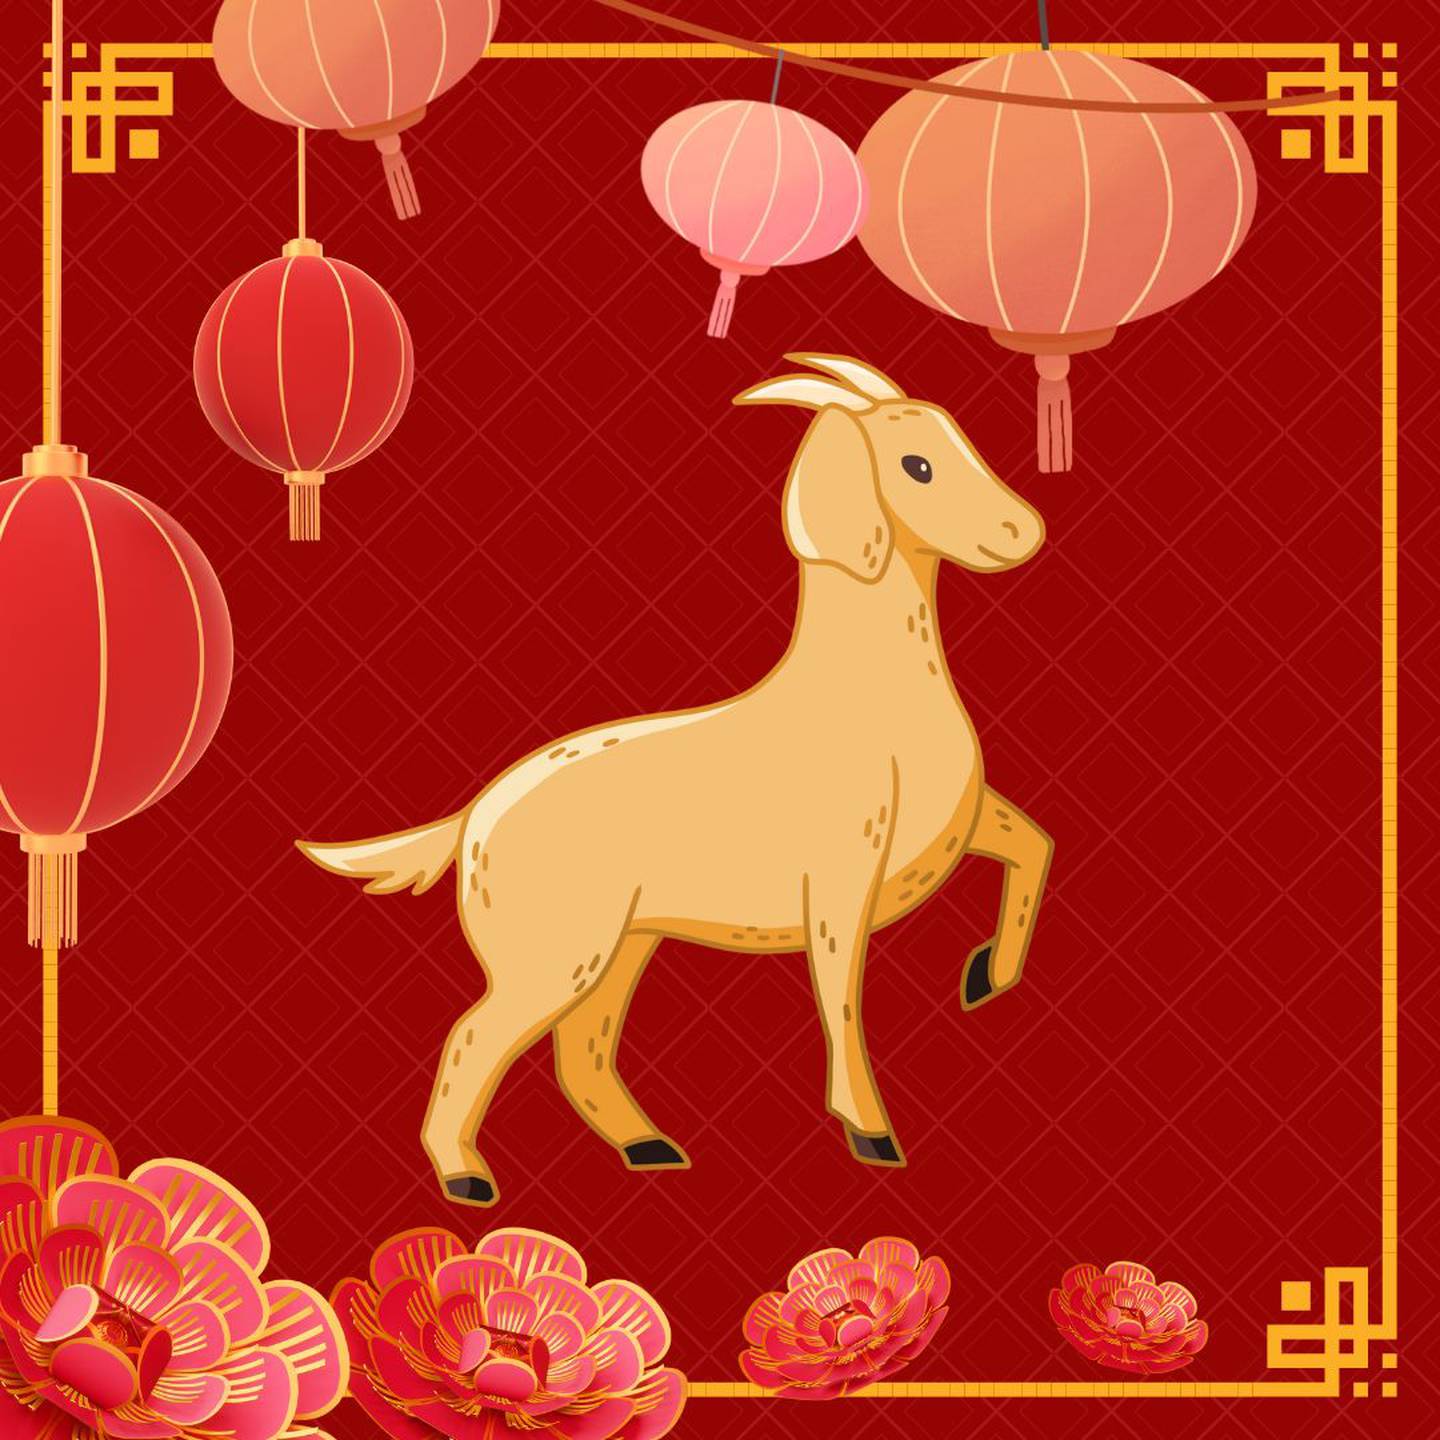 Caricatura de una cabra sobre un fondo rojo con motivos decorativos orientales